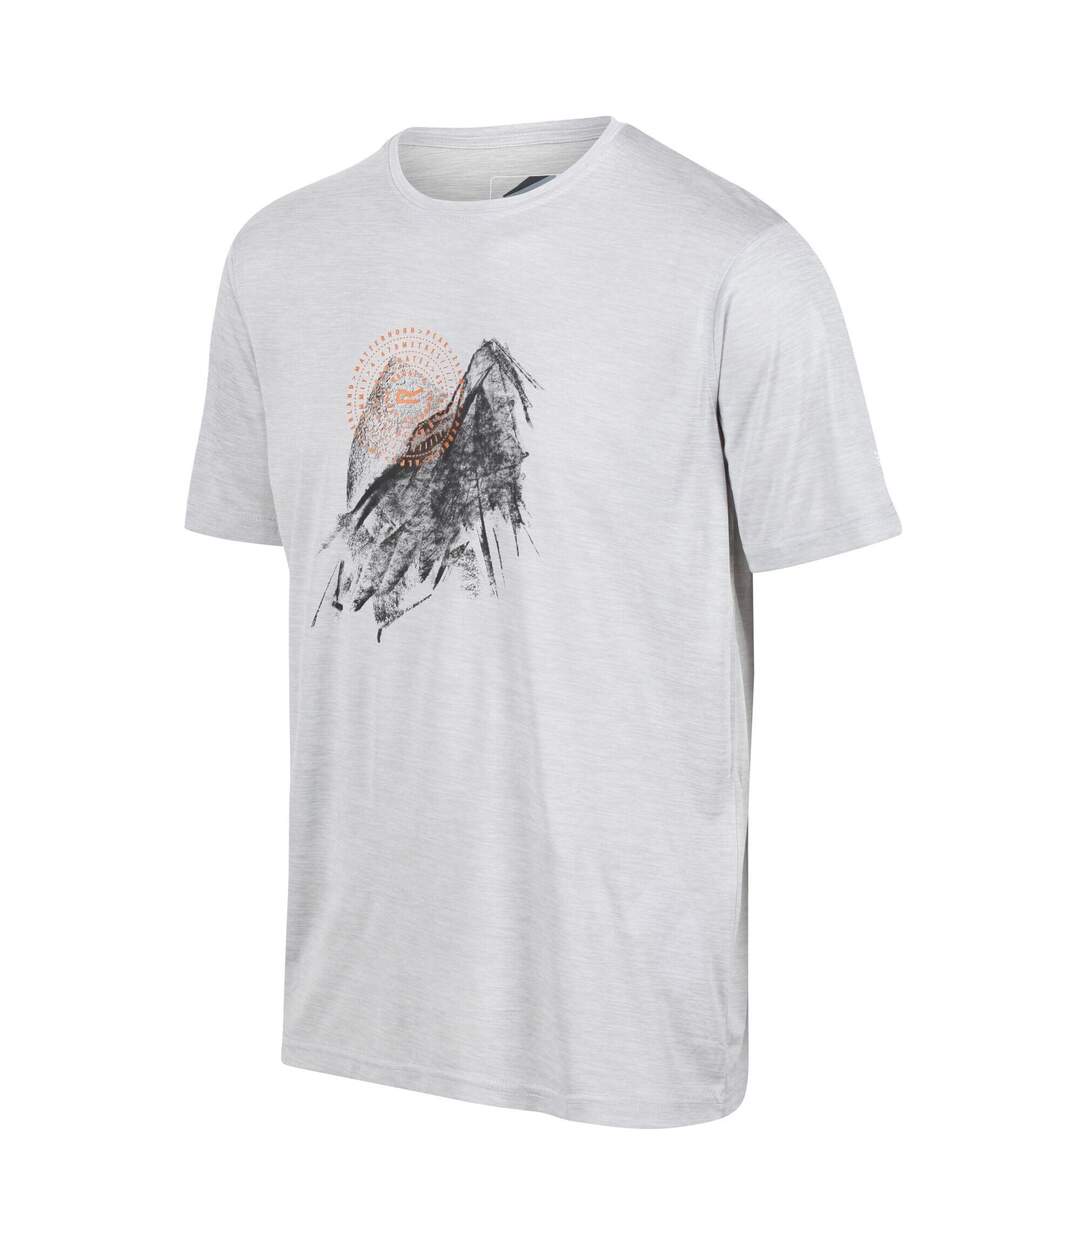 Regatta - T-shirt FINGAL - Homme (Gris argenté) - UTRG7159